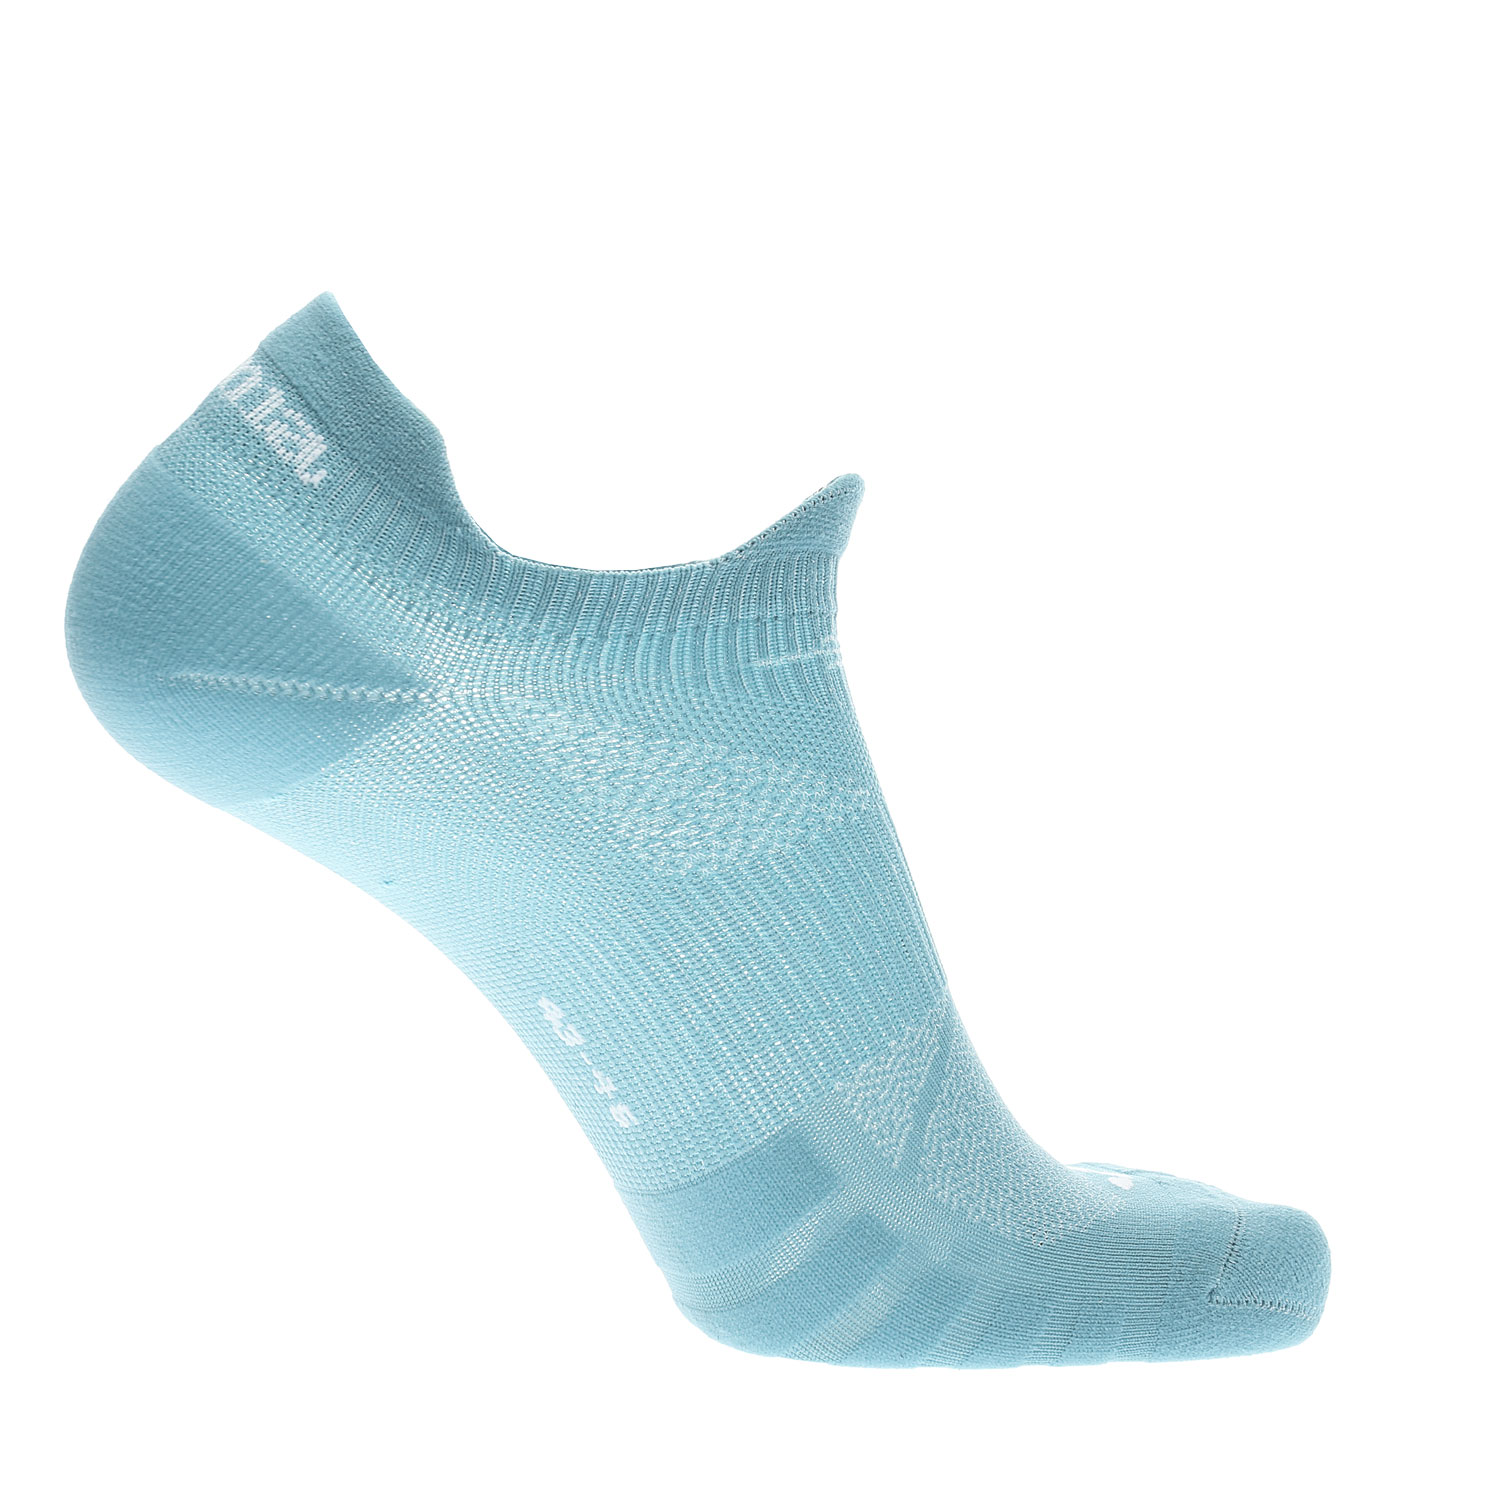 Joma Performance Socks - Light Blue